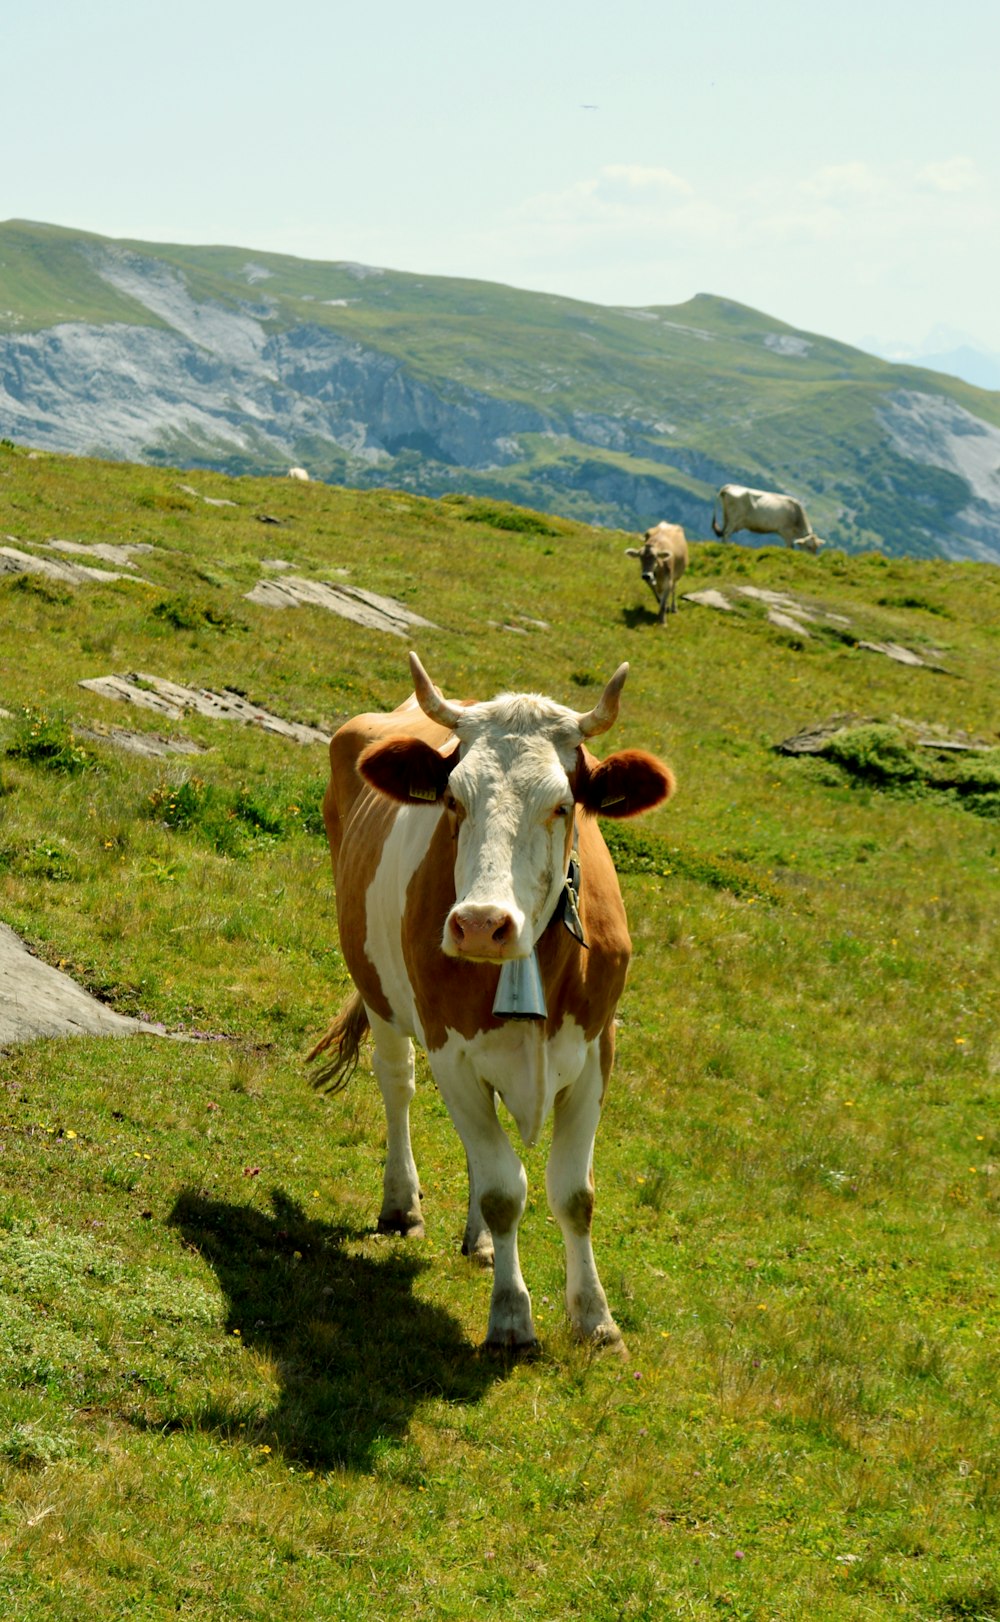 昼間の緑の芝生に茶色と白の牛